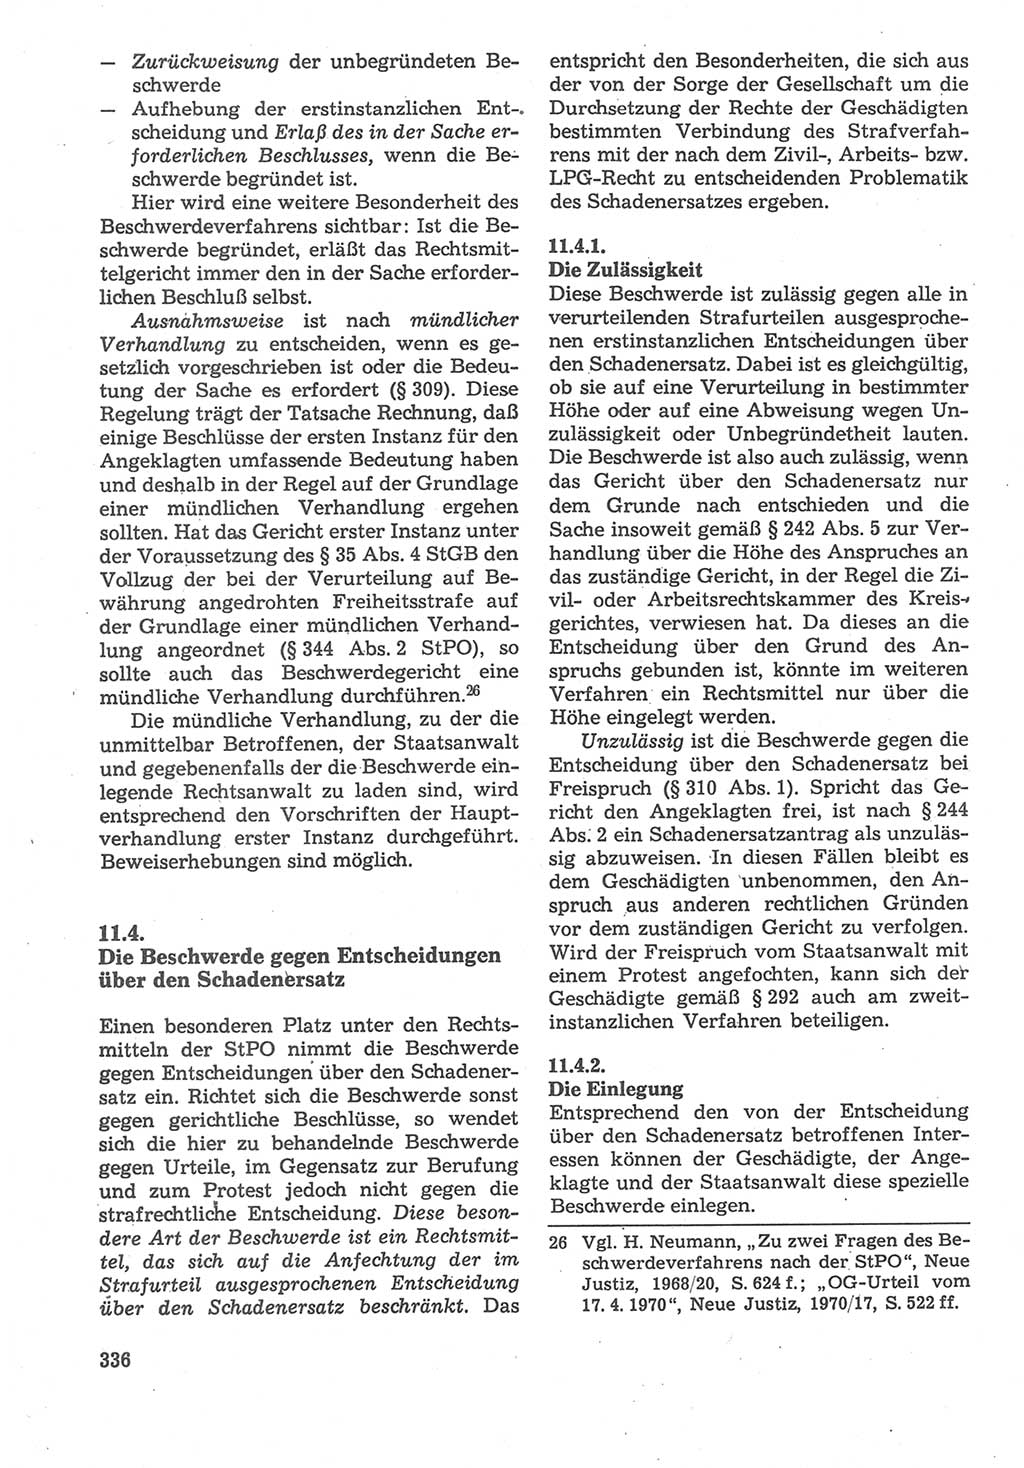 Strafverfahrensrecht [Deutsche Demokratische Republik (DDR)], Lehrbuch 1987, Seite 336 (Strafverf.-R. DDR Lb. 1987, S. 336)